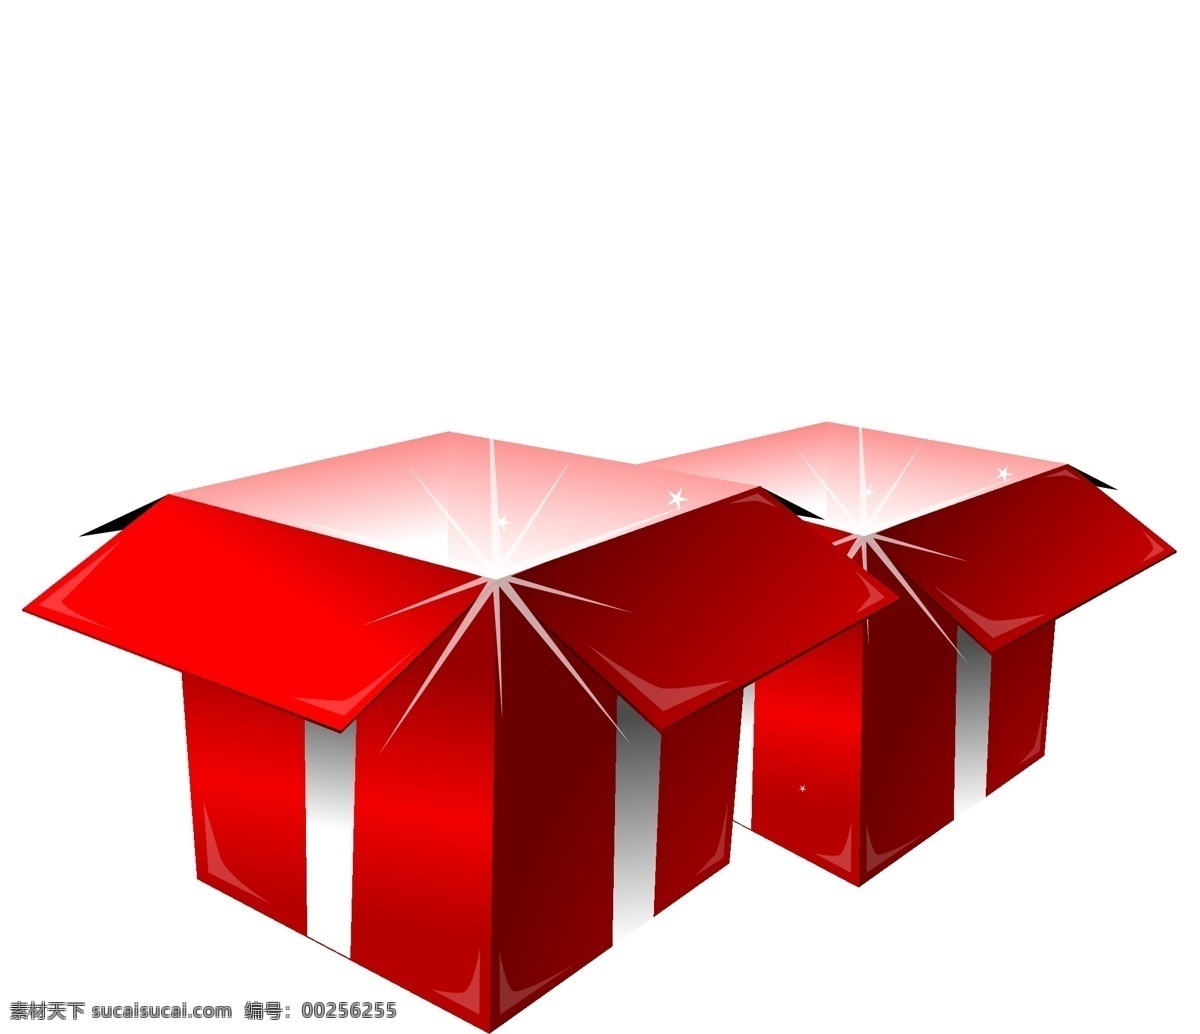 圣诞 精美 礼盒 包装盒 矢量 盒子 精美盒子 盒子素材 礼品盒子 圣诞盒子 发光盒子